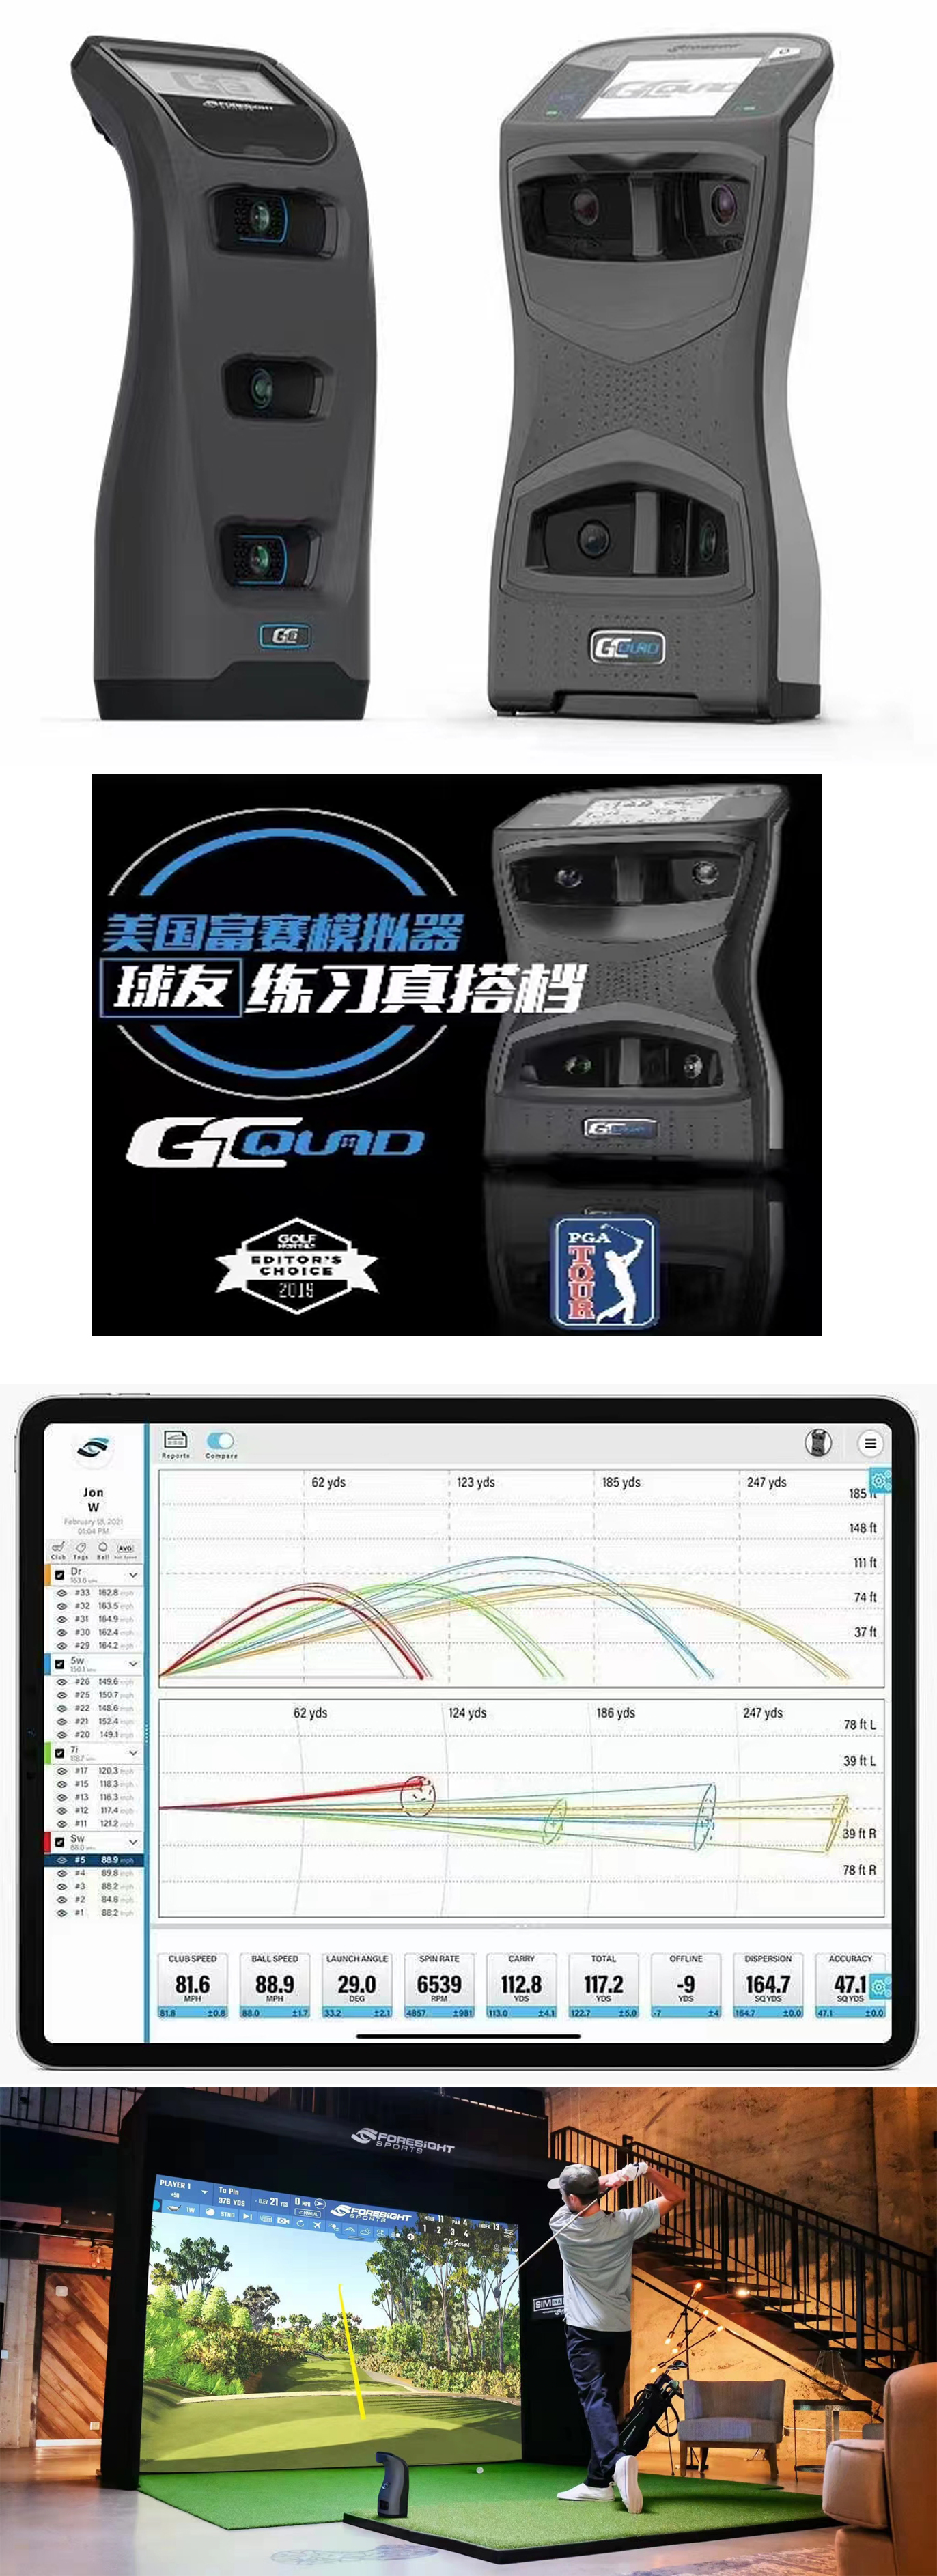 高尔夫模拟设备技术优势.jpg